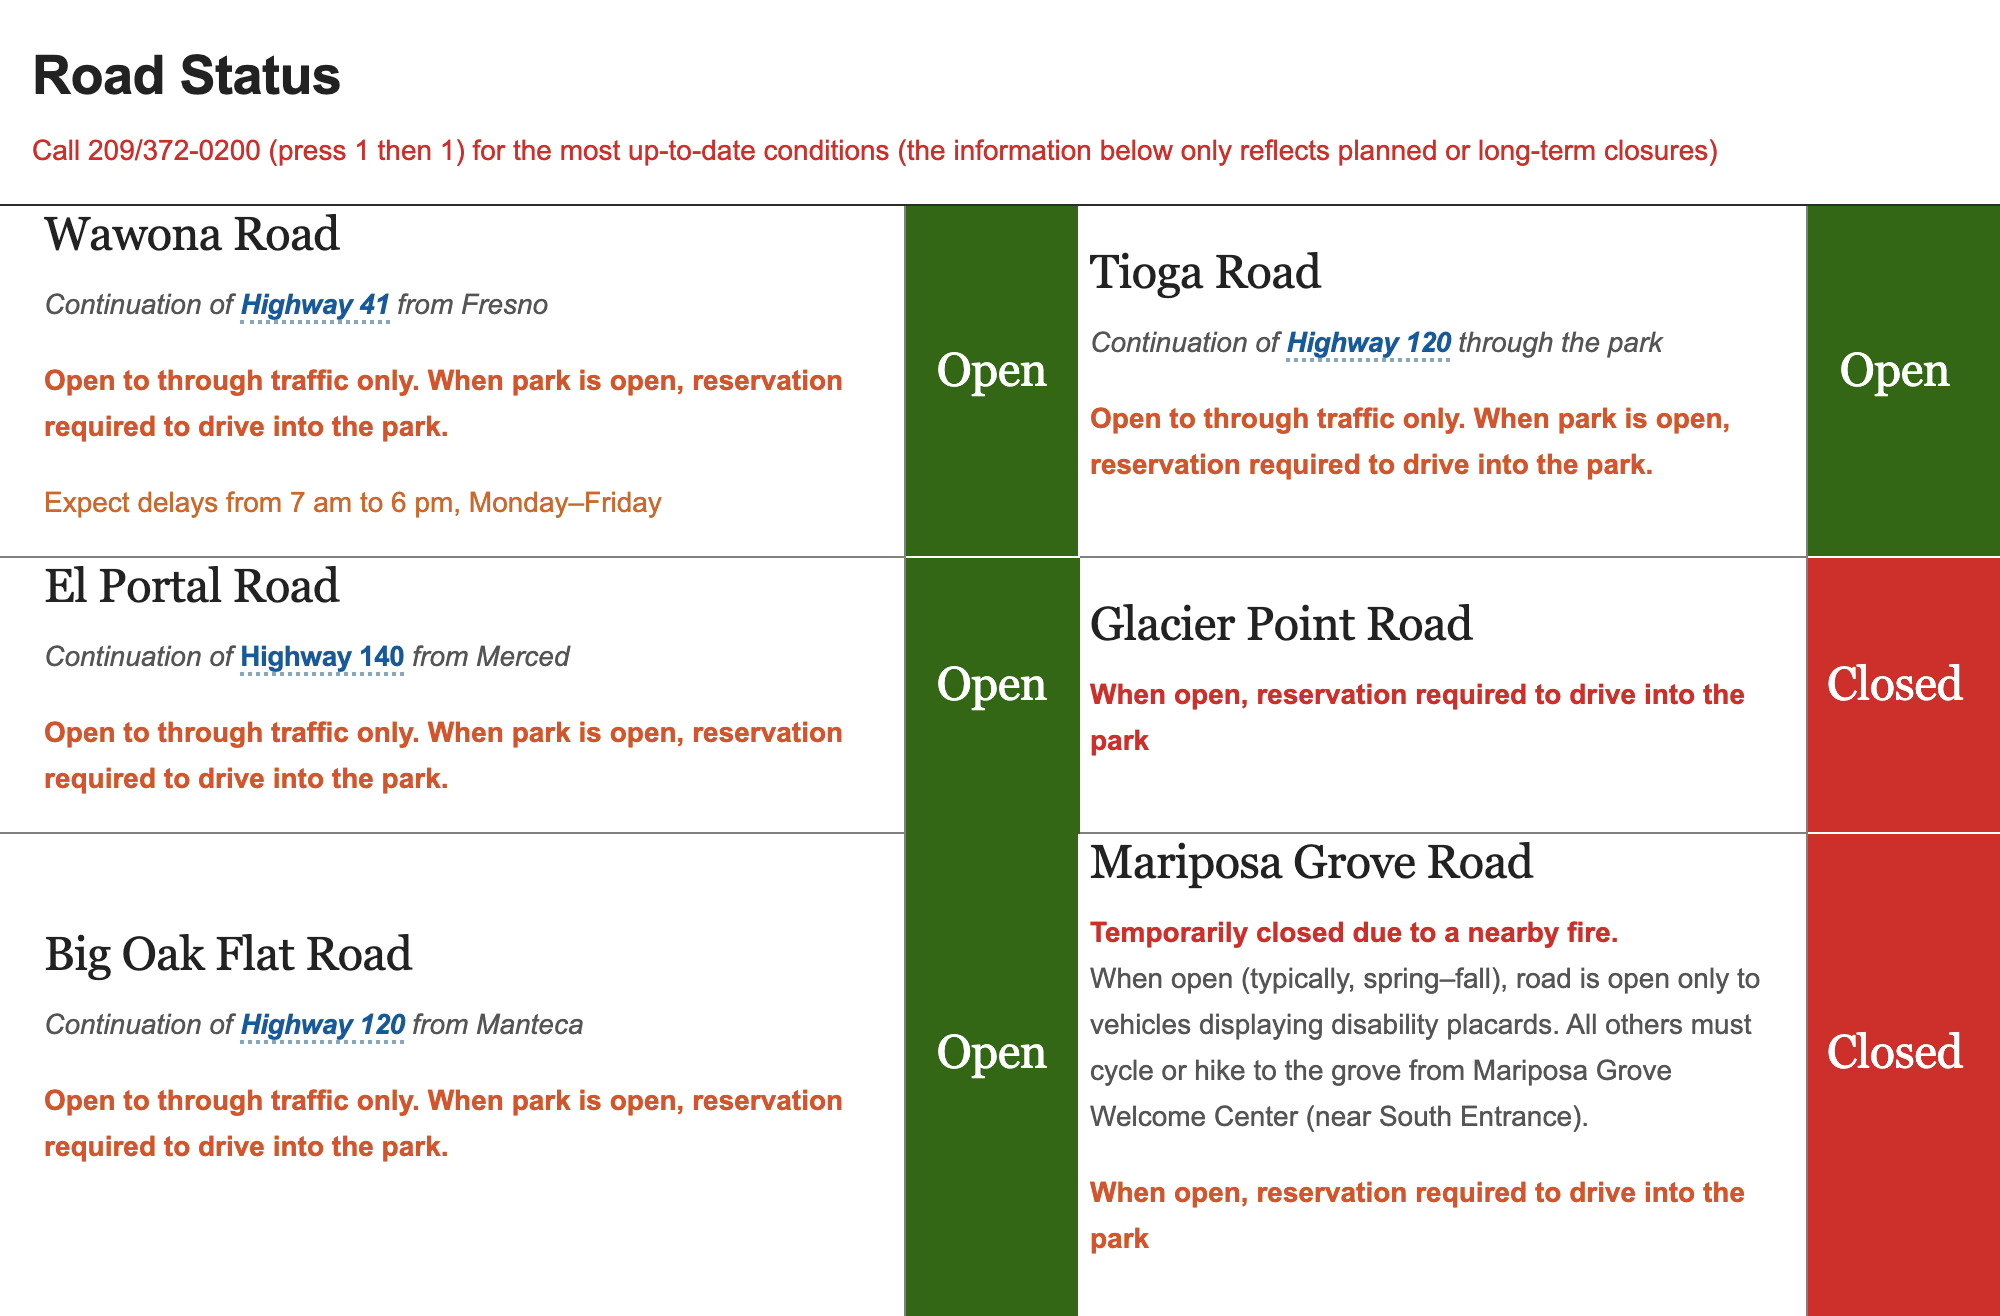 На официальном сайте национальных парков в США указано, какие дороги закрыты и почему. Например, в сентябре 2020 года Mariposa Grove Road была временно закрыта из⁠-⁠за пожаров